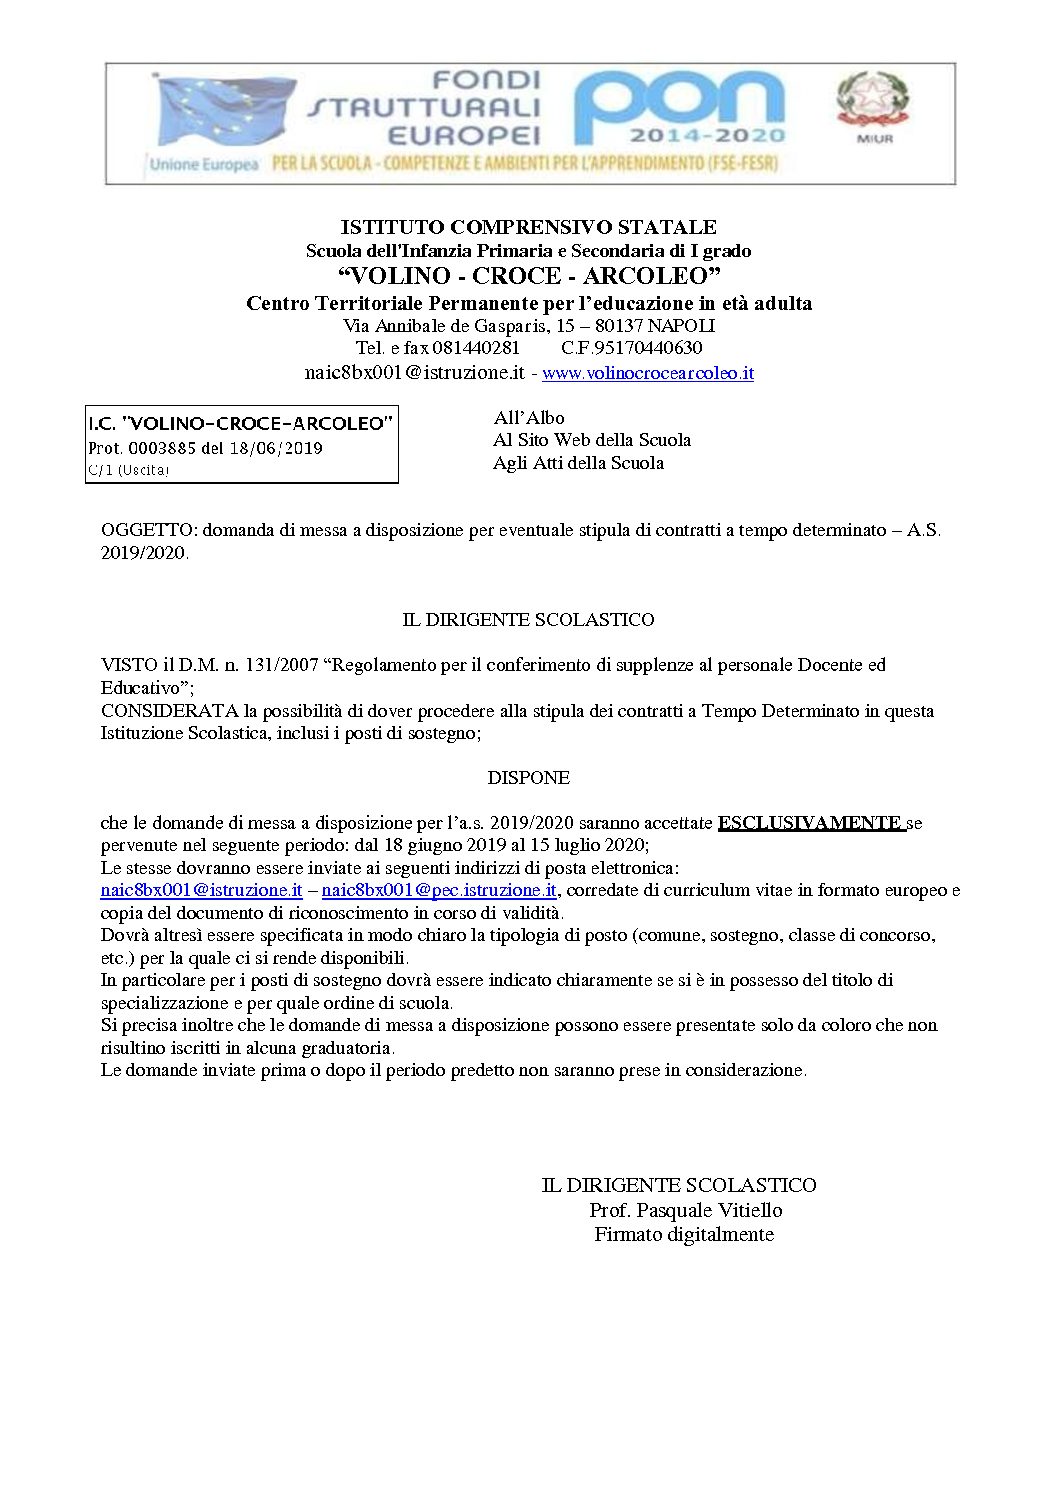 DOMANDE-DI-MESSE-A-DISPOSIZIONE-A.S.-2019-2020-signed